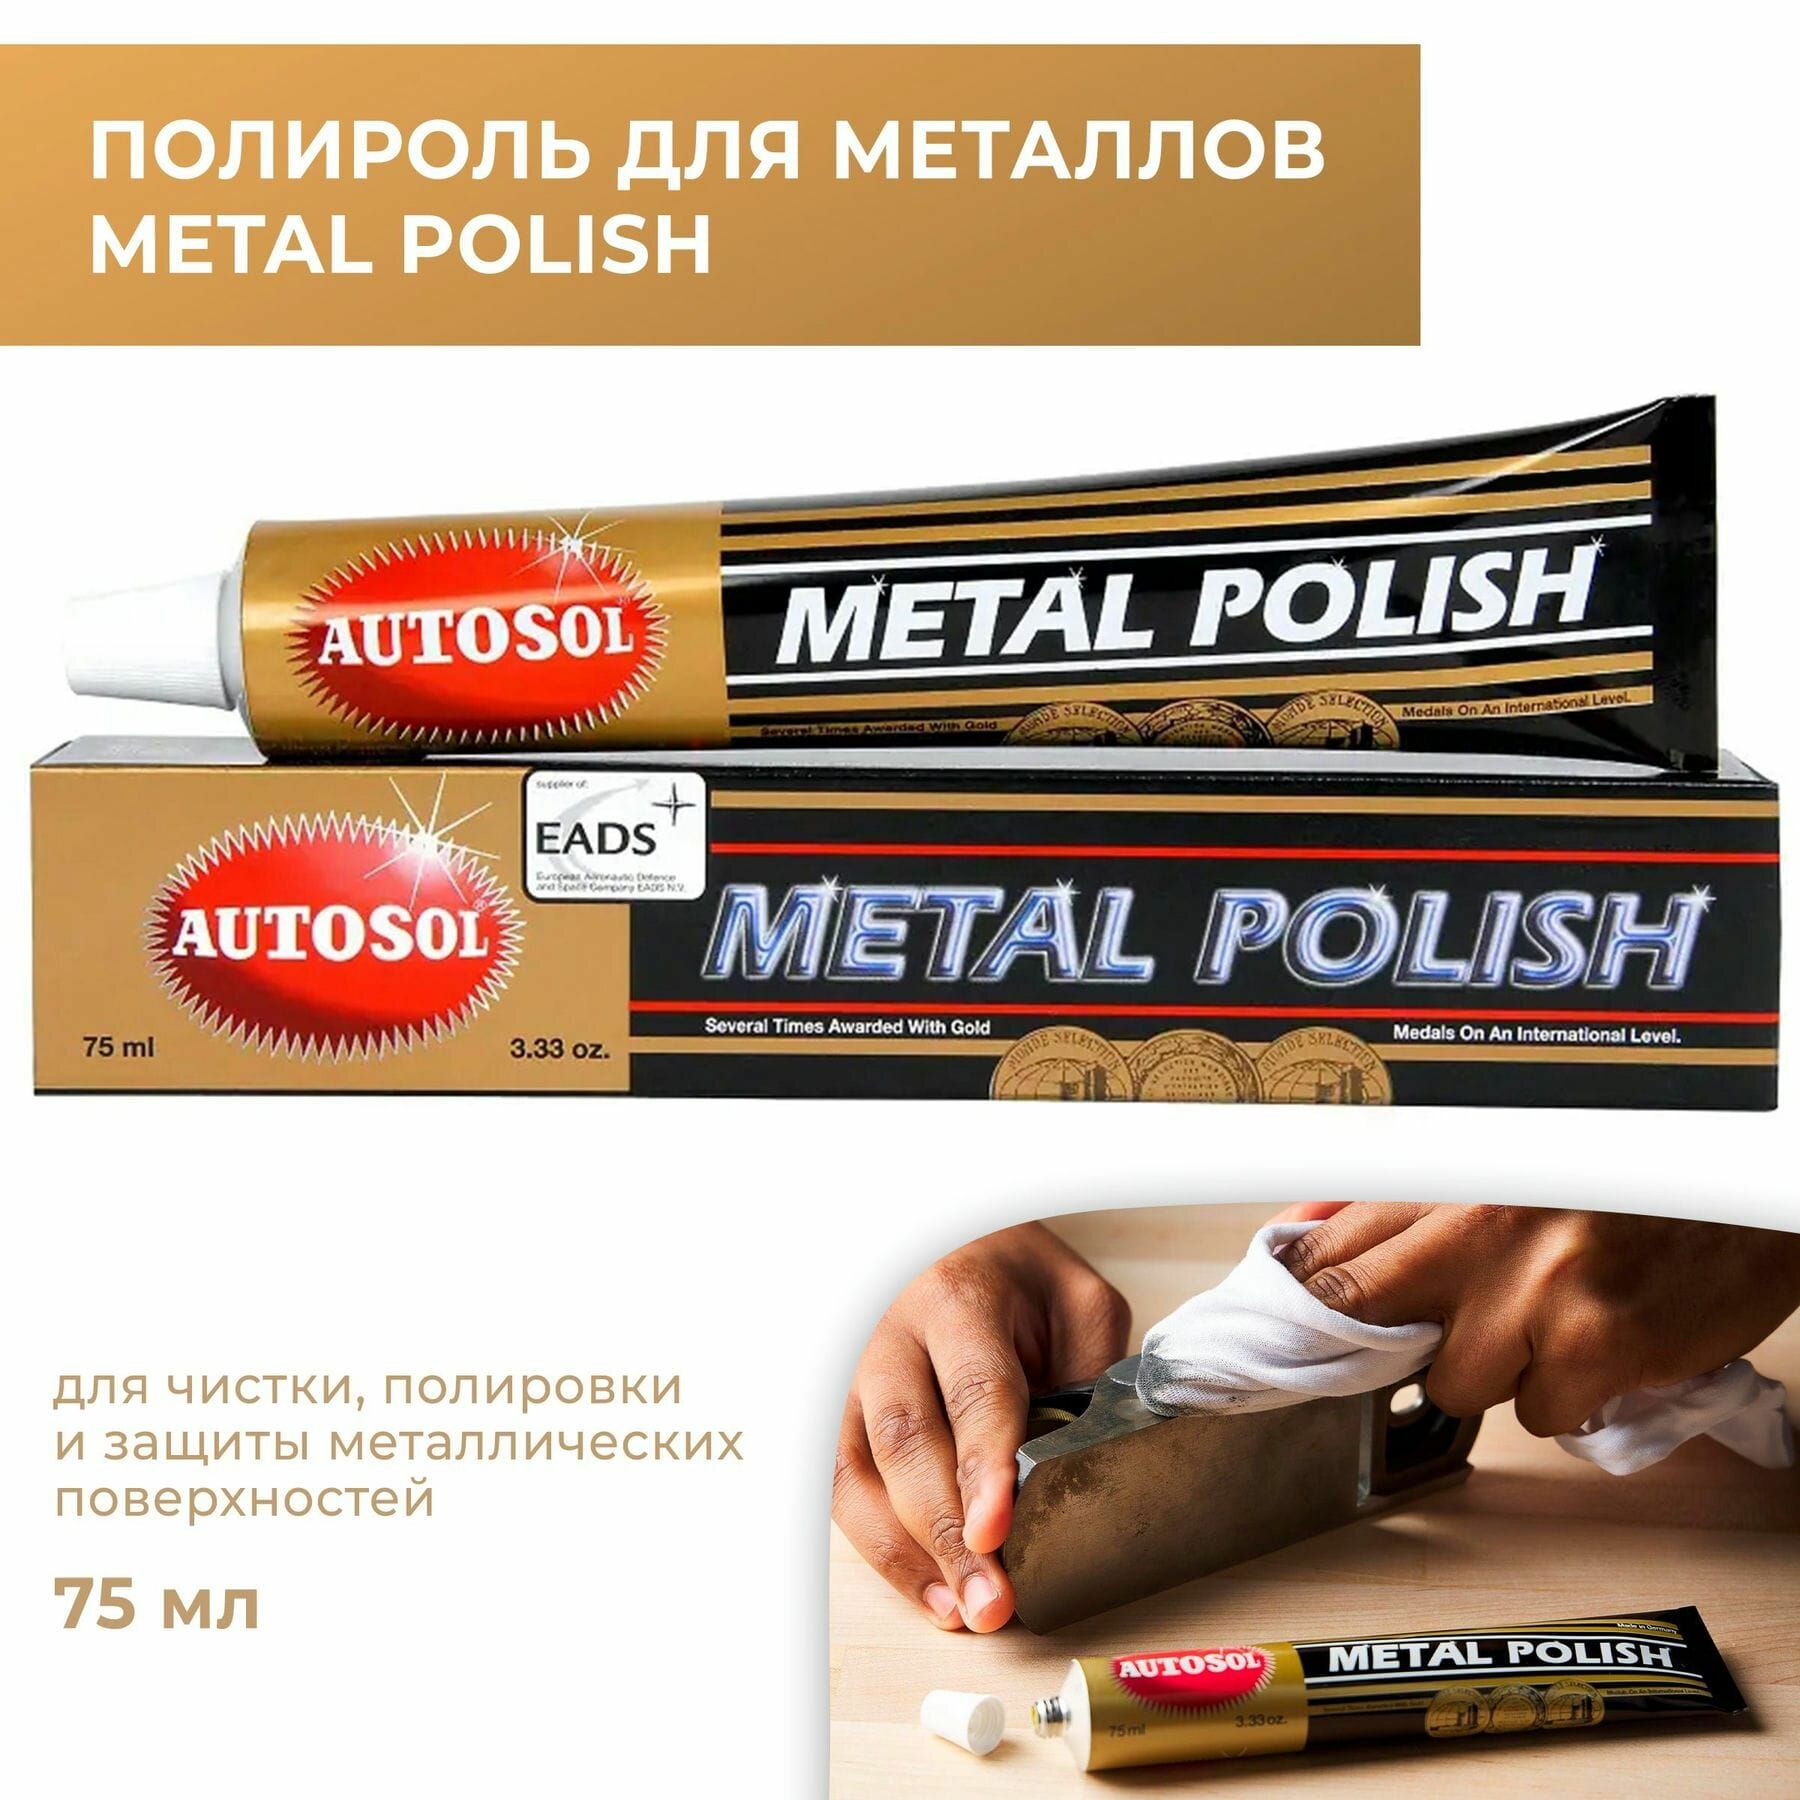 Полироль для металлических поверхностей Autosol Metal Polish 75 мл.